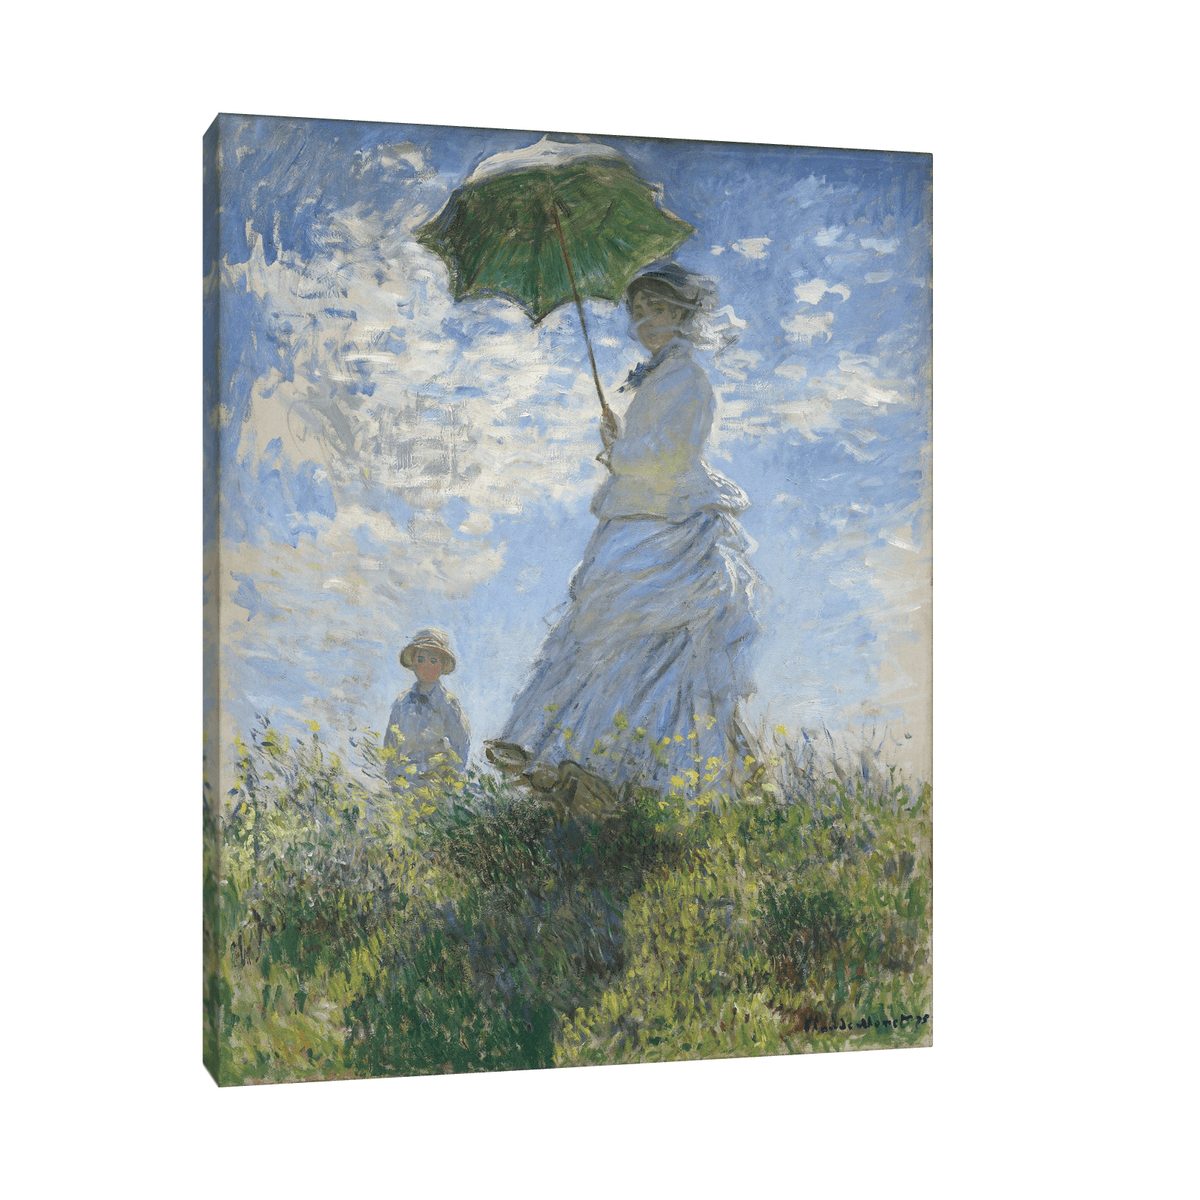 Madame Monet and Her Son, Claude Monet - ArtDeco Canvas